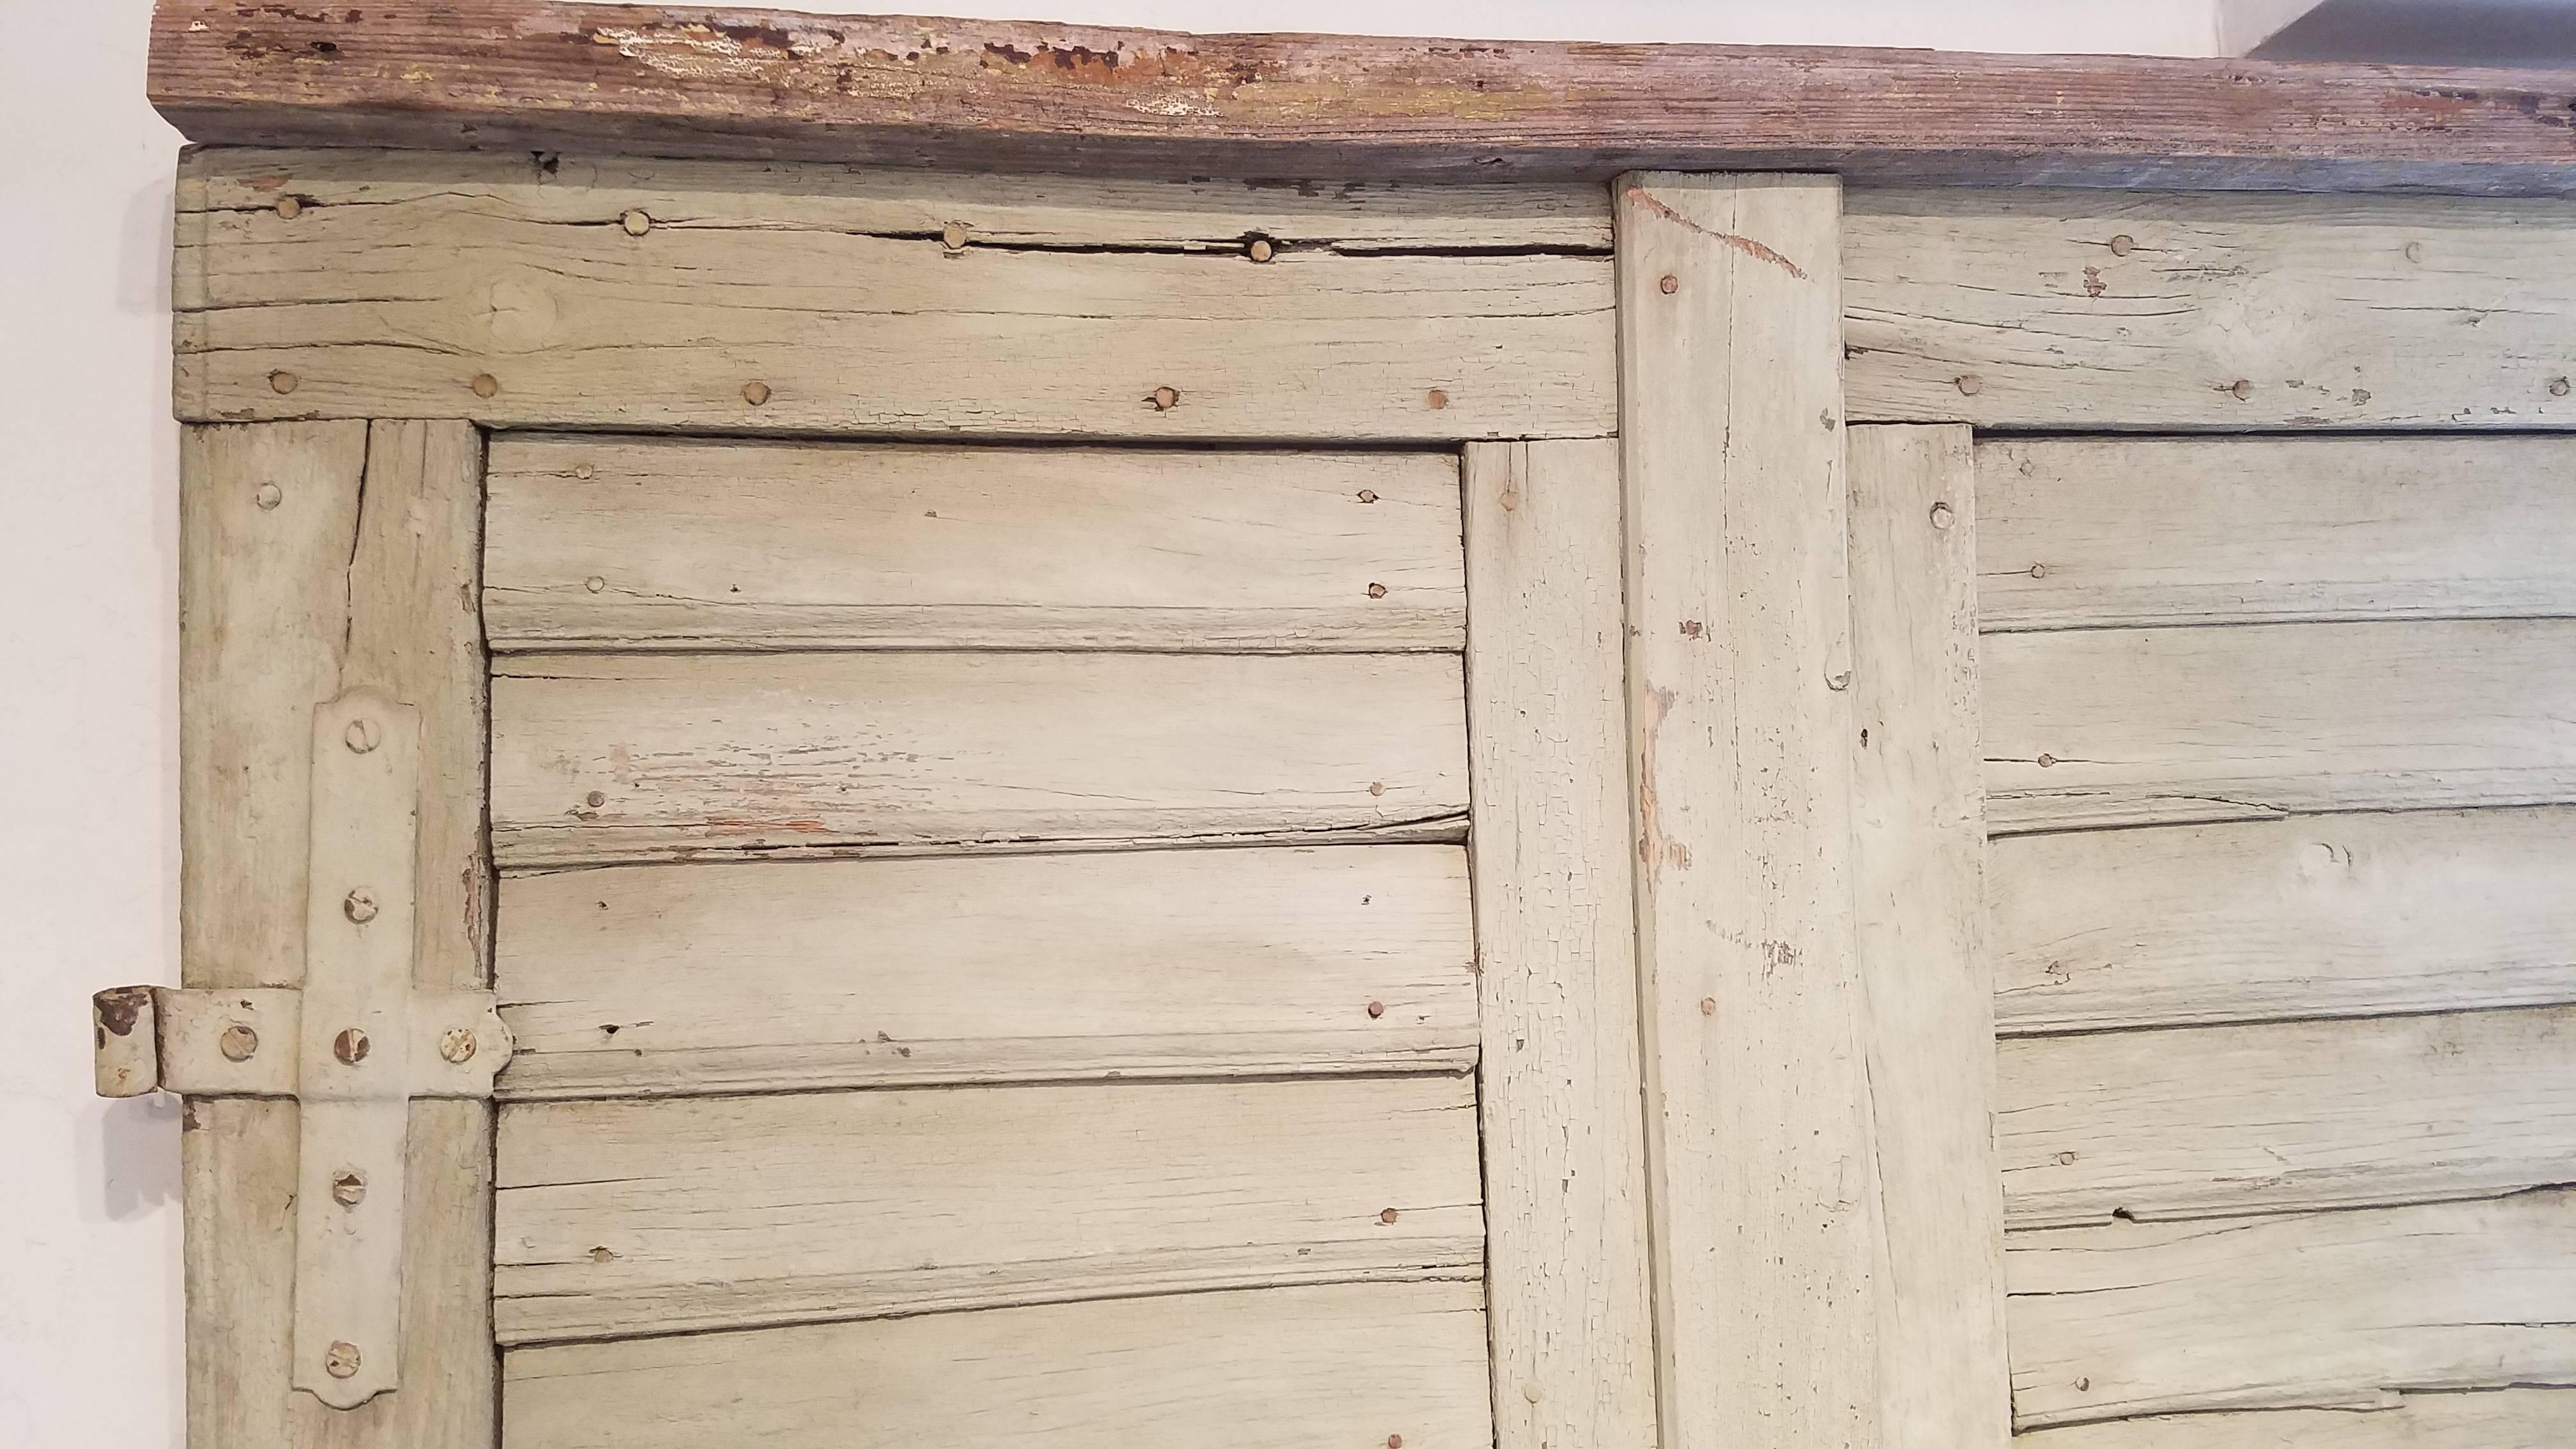 Wood Antique Door Panel with Original Hardware For Sale